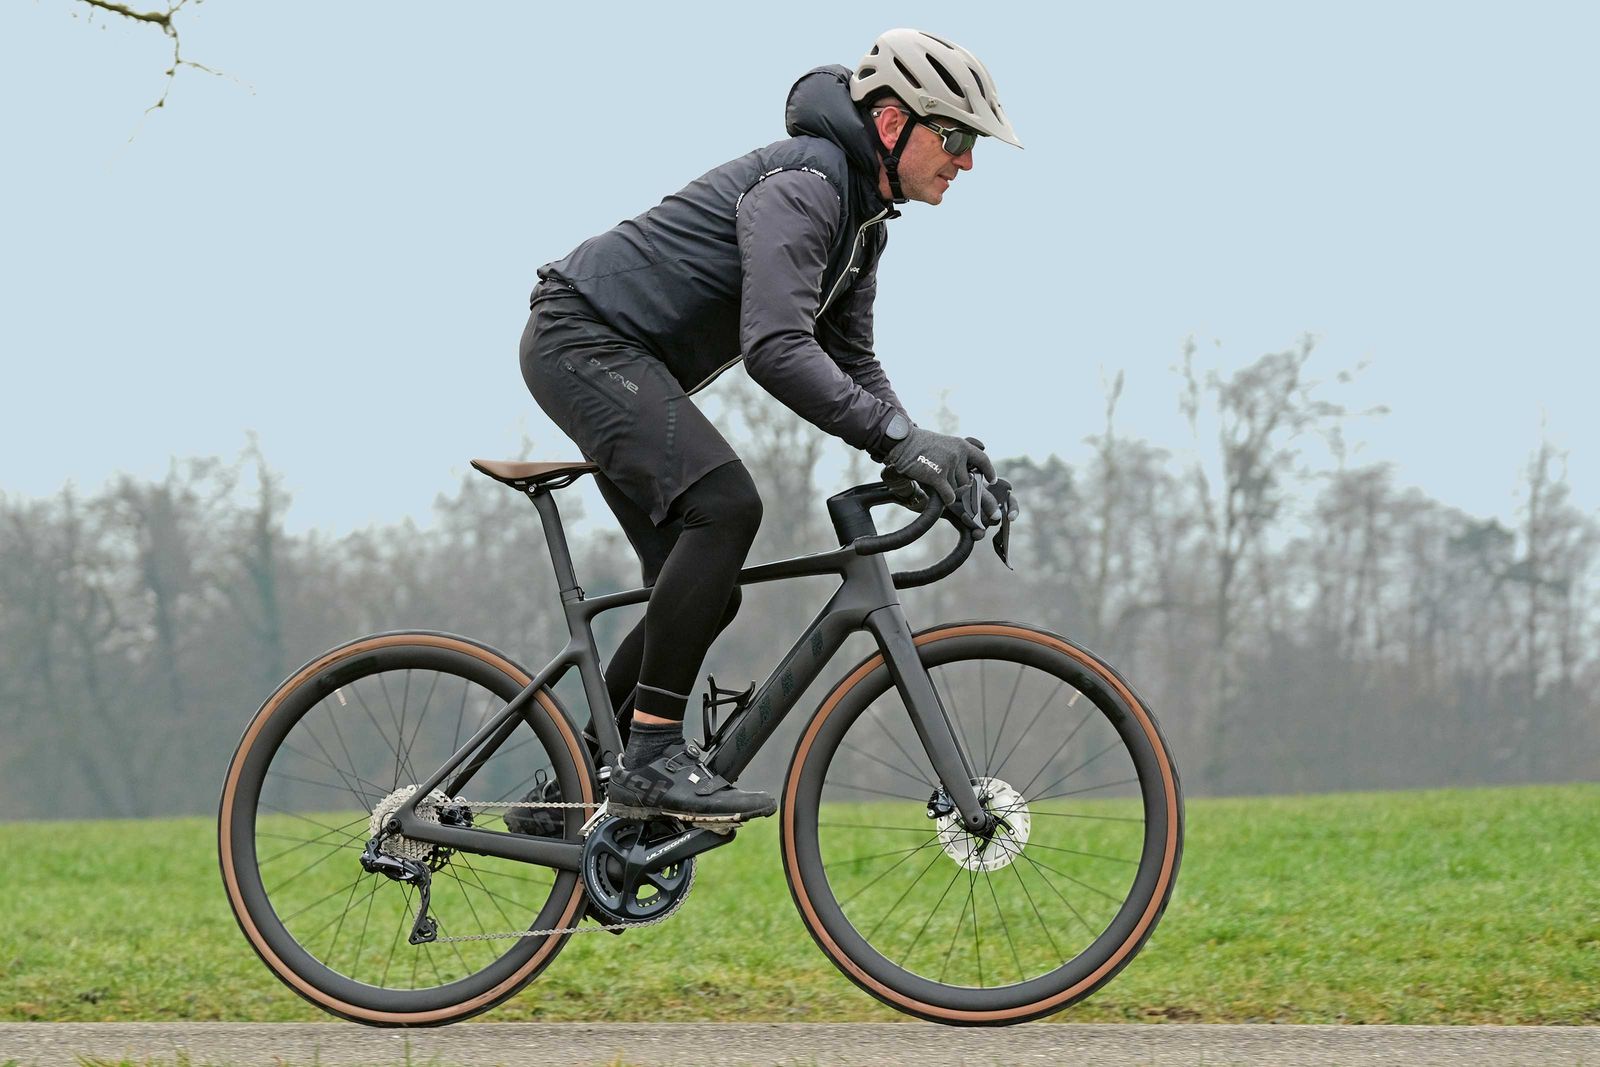 Die Basis für das eRide ist das Scott Addict (dt = süchtig), auch ohne Motor ein preisgekröntes Rennrad, das sogar von World-Tour-Radsportmannschaften im harten Rennalltag eingesetzt wird: federleicht, stabil, mit einem ­agilen Fahrverhalten.